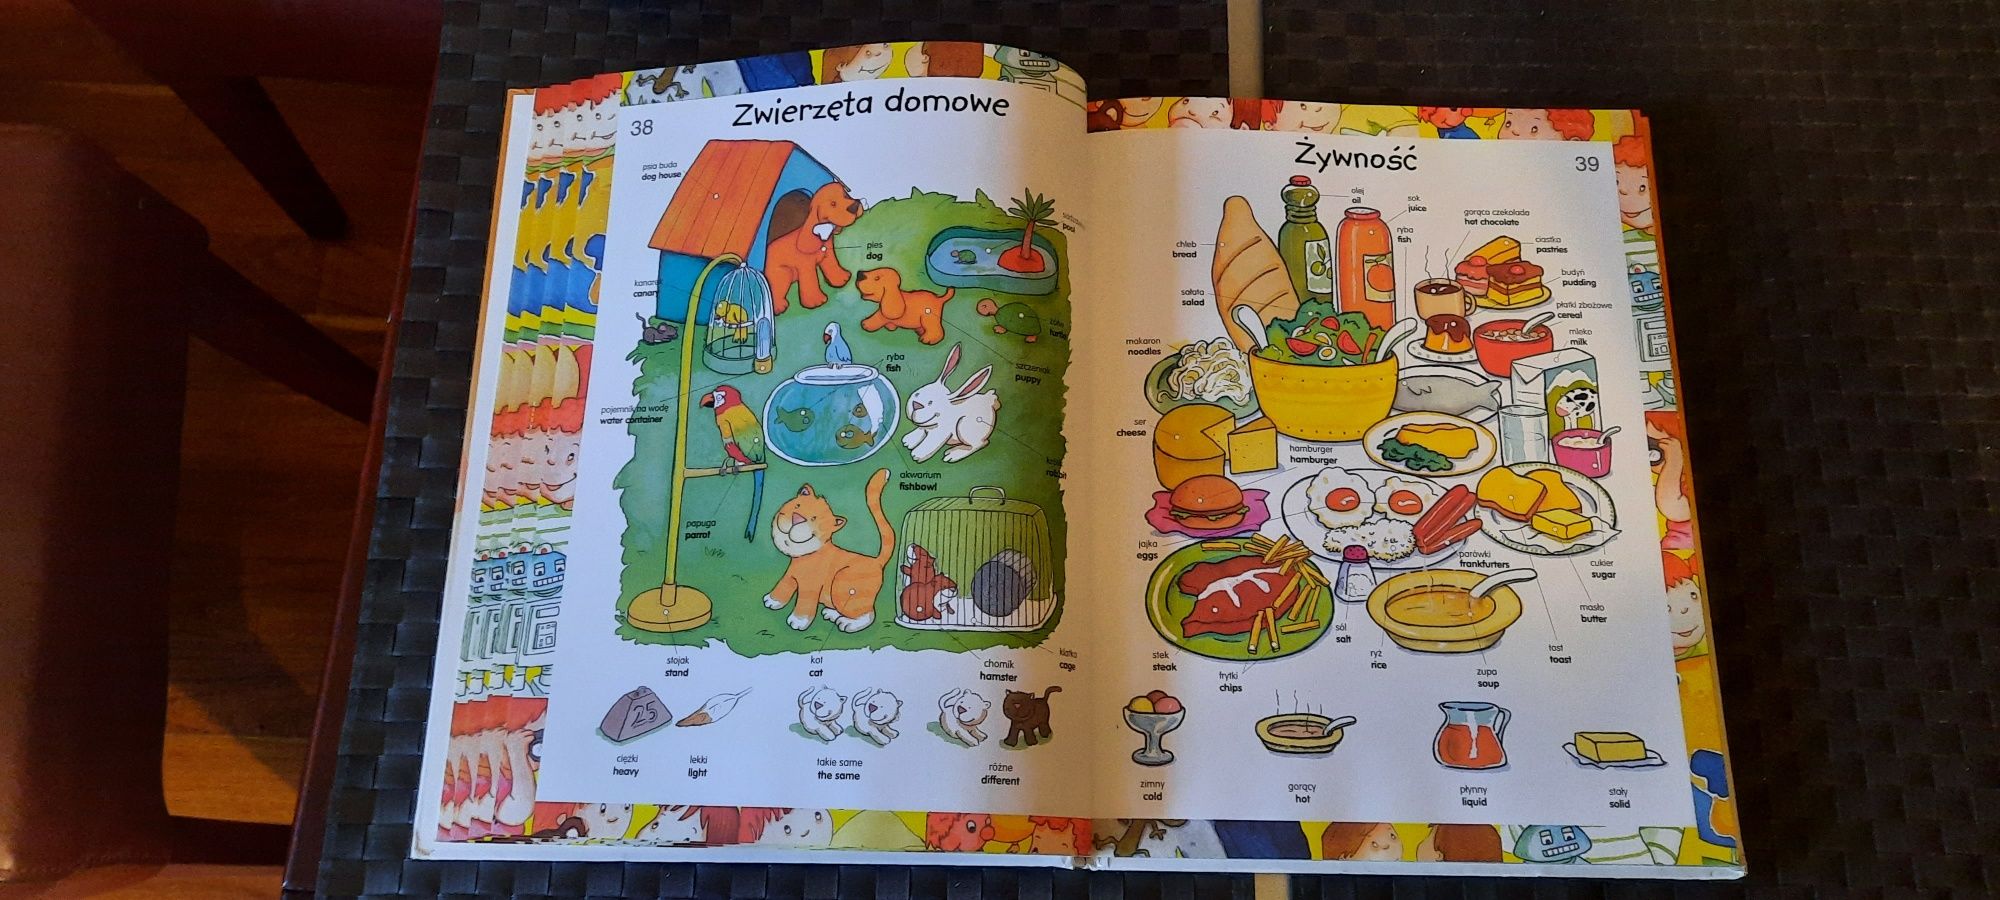 Wielki ilustrowany słownik polsko-angielski dla dzieci